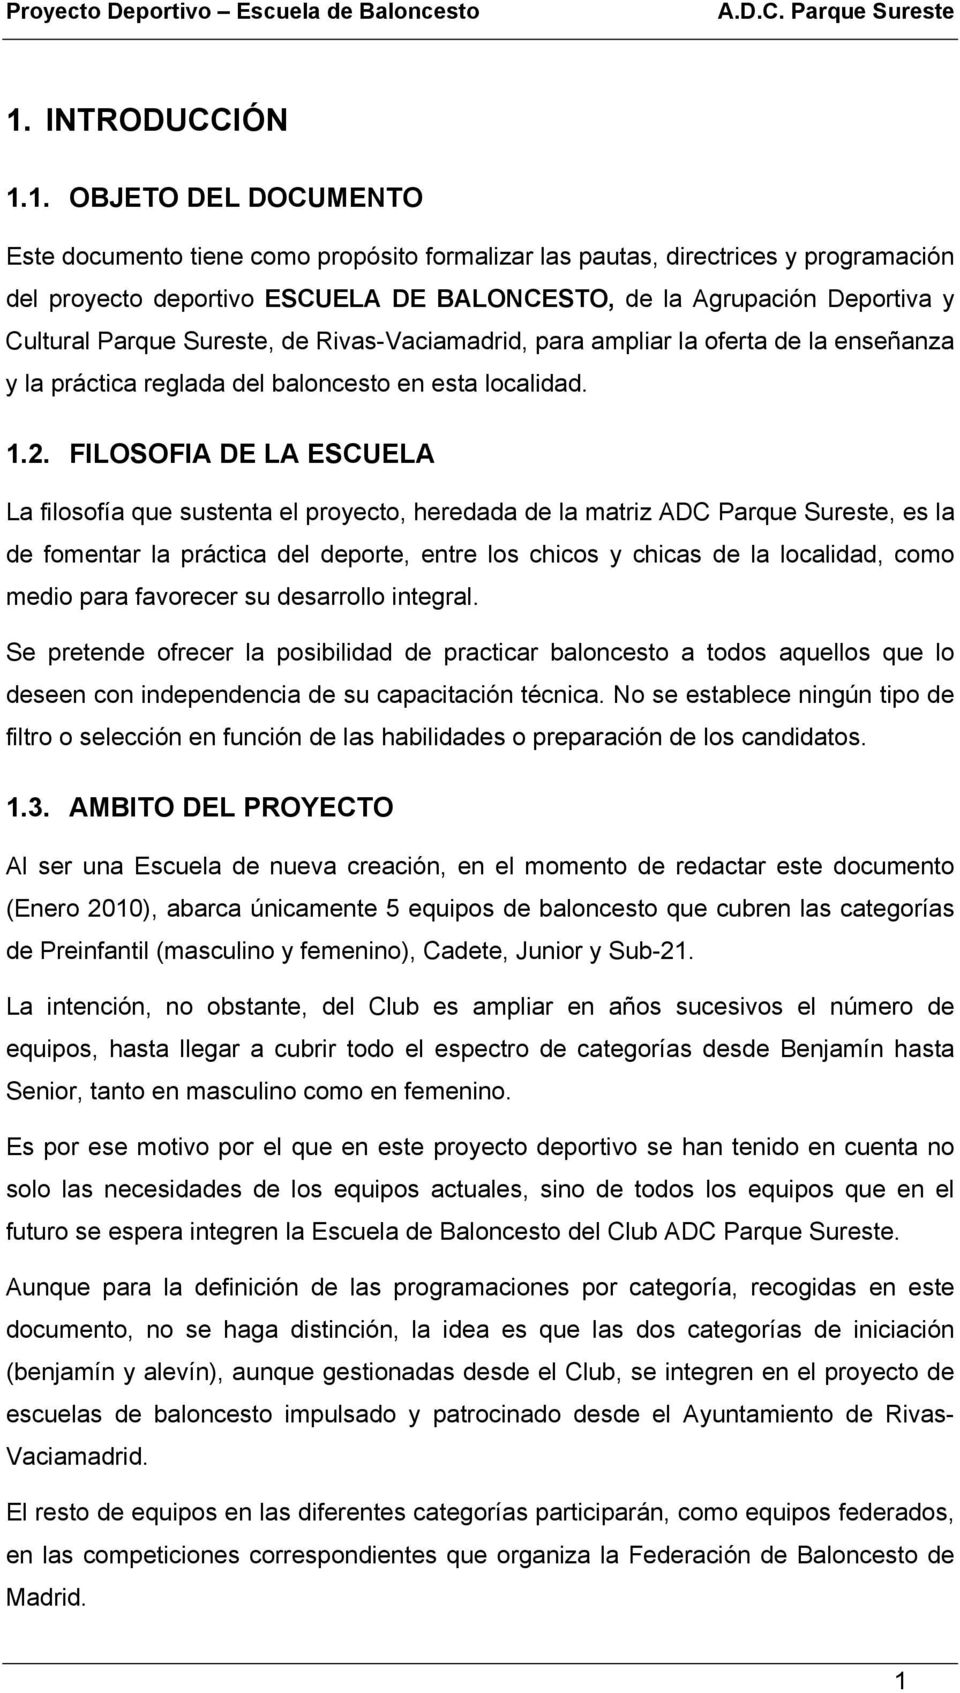 PROYECTO DEPORTIVO ESCUELA DE BALONCESTO - PDF Free Download